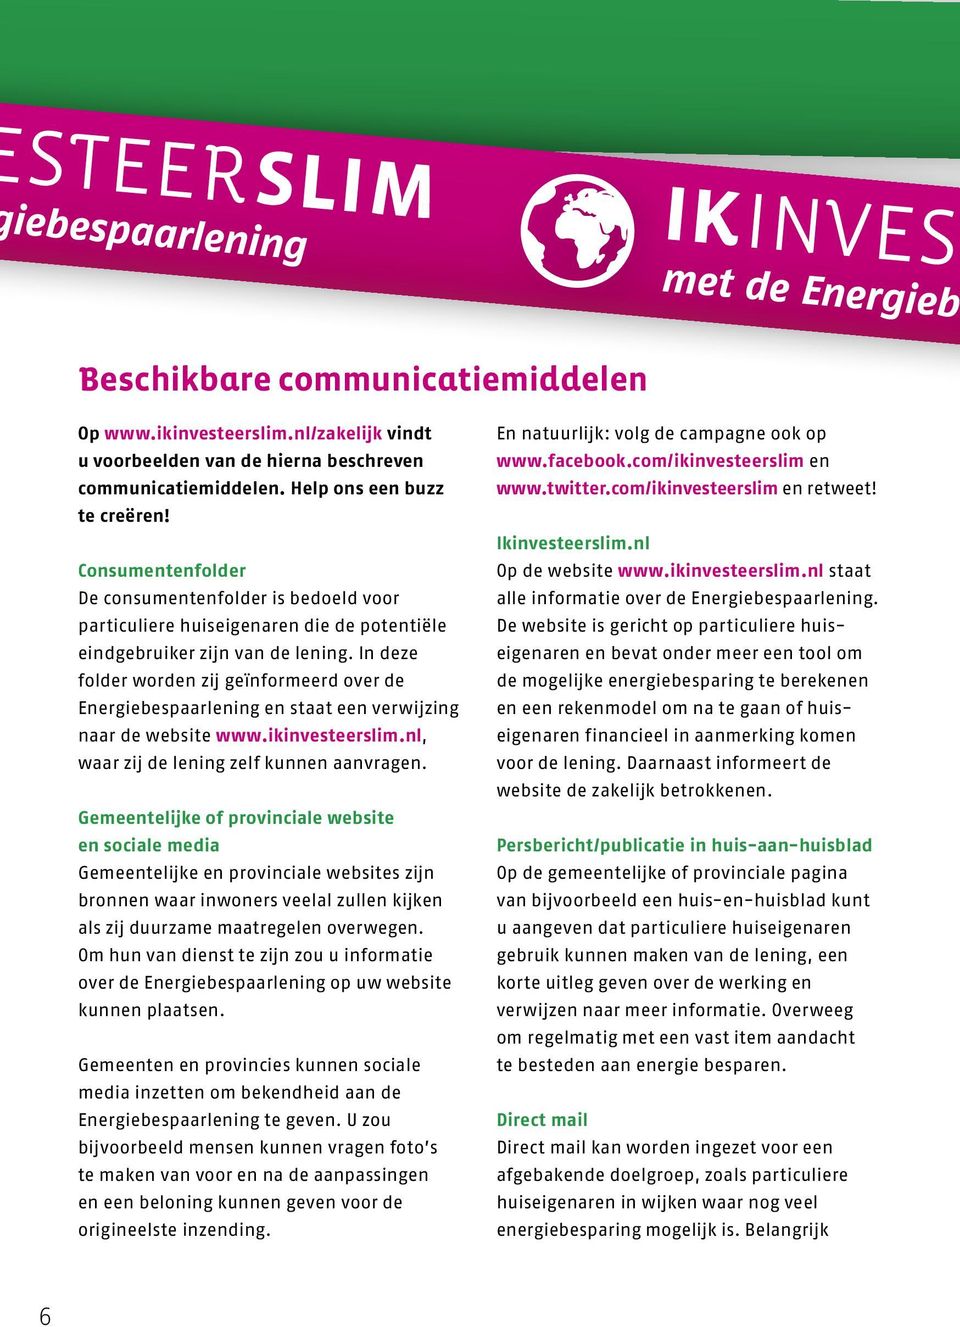 In deze folder worden zij geïn formeerd over de Energiebespaar lening en staat een verwijzing naar de website www.ikinvesteerslim.nl, waar zij de lening zelf kunnen aanvragen.